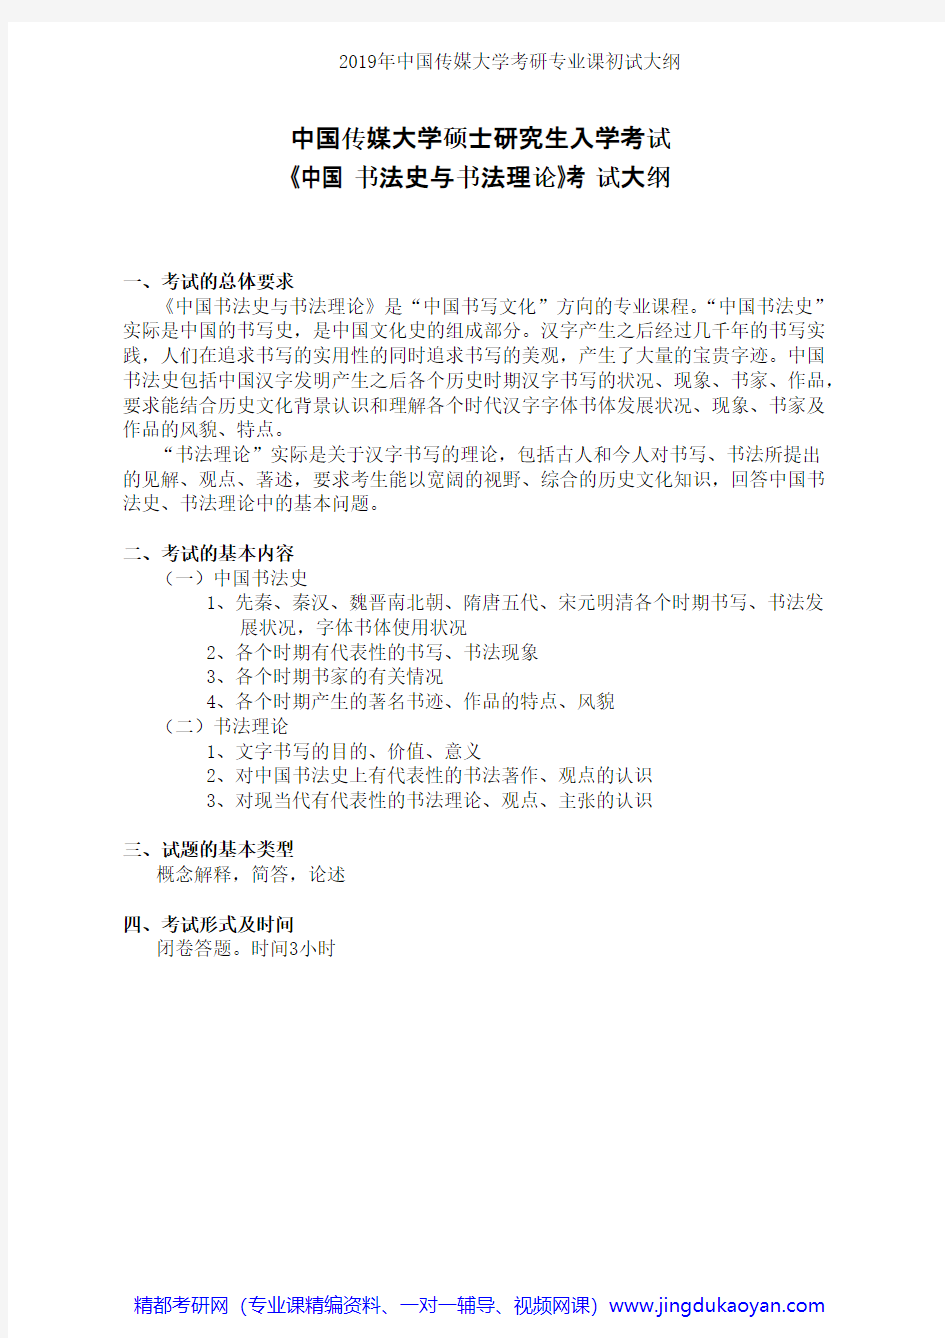 中国传媒大学832中国书法史与书法理论2019年考研专业课初试大纲